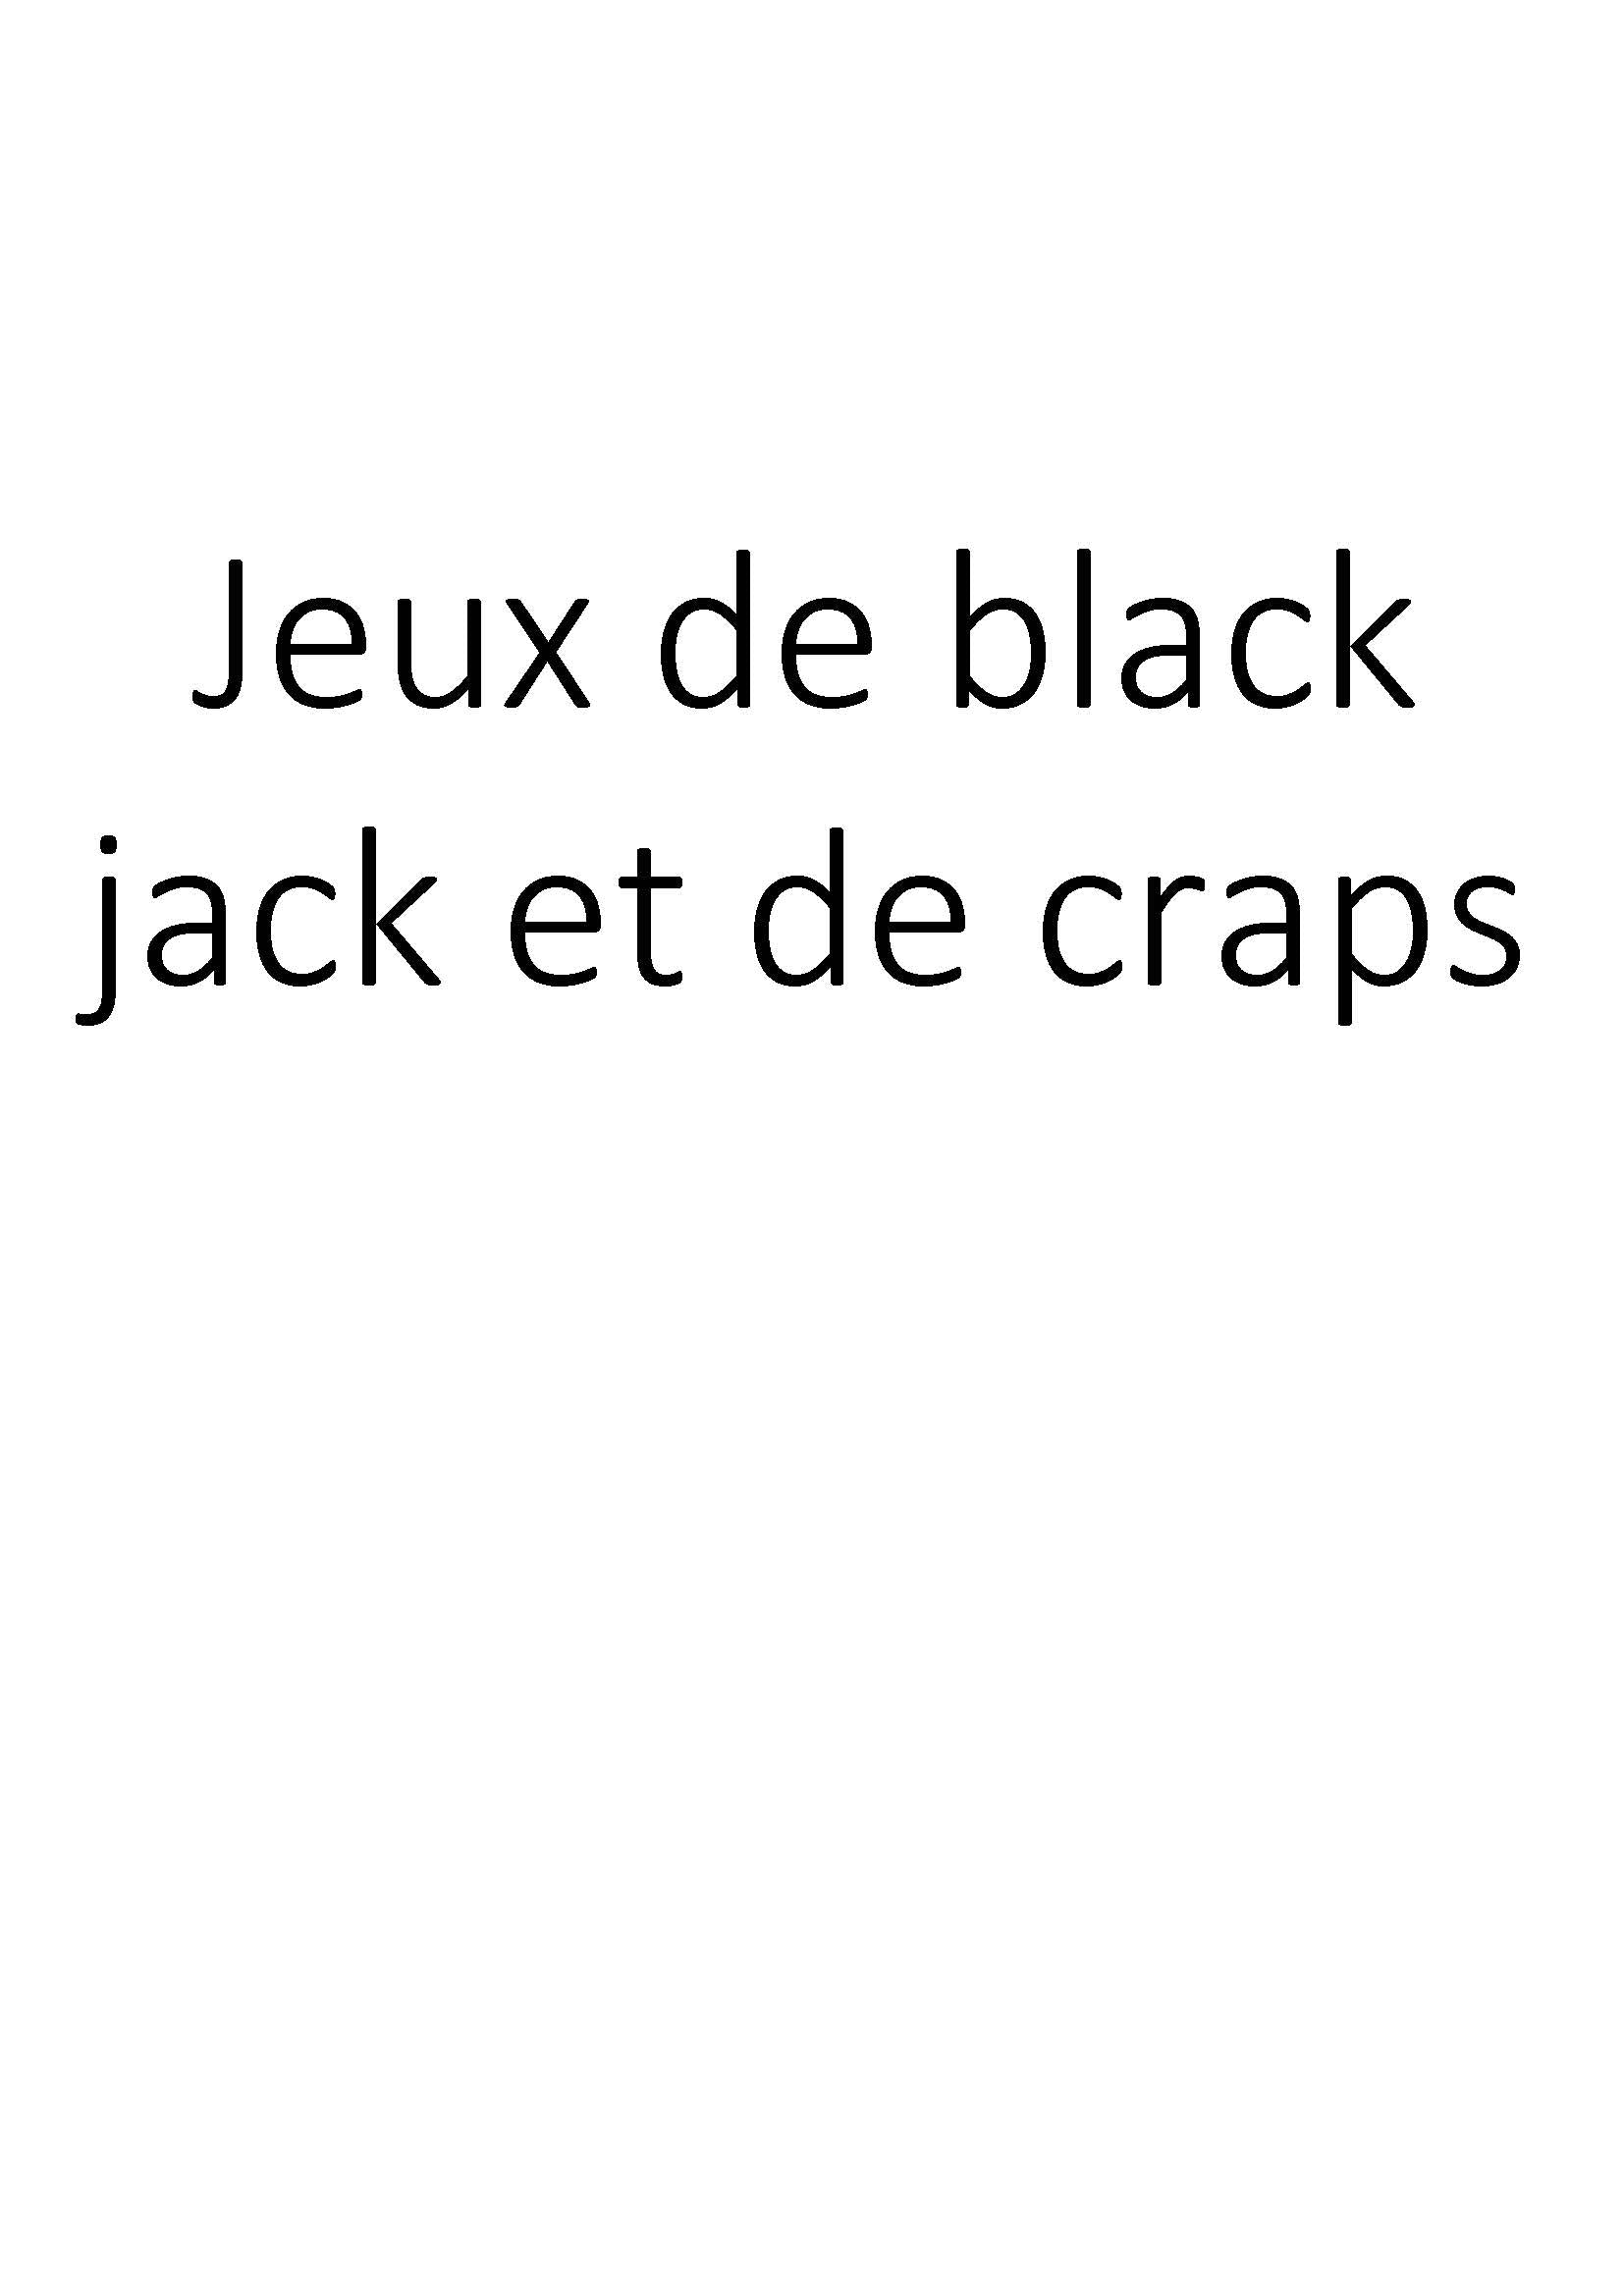 Jeux de black jack et de craps clicktofournisseur.com